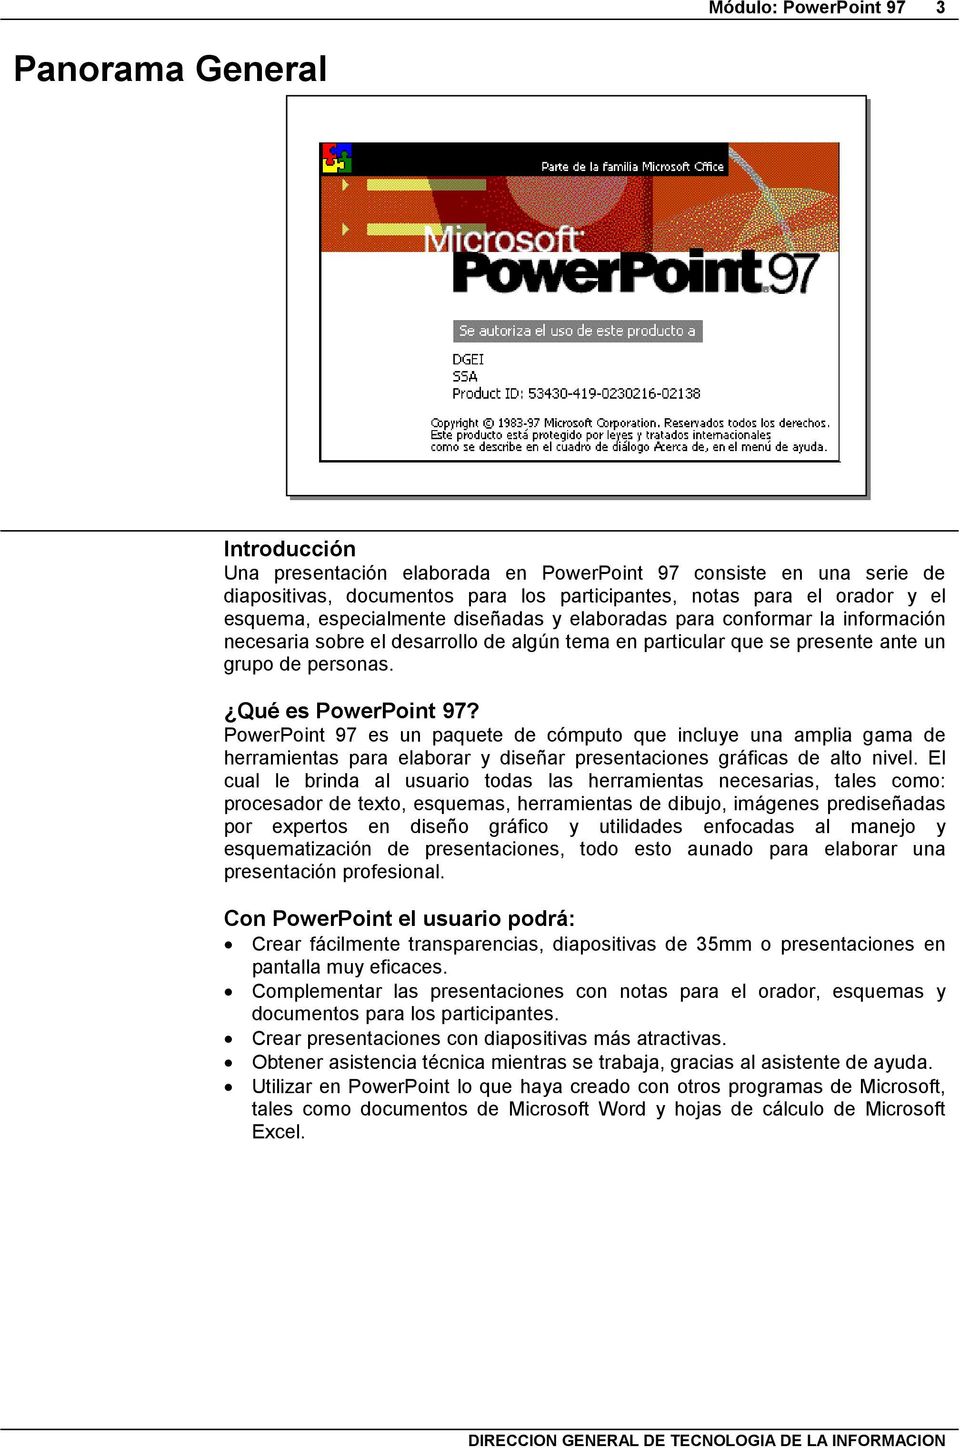 PowerPoint 97 es un paquete de cómputo que incluye una amplia gama de herramientas para elaborar y diseñar presentaciones gráficas de alto nivel.